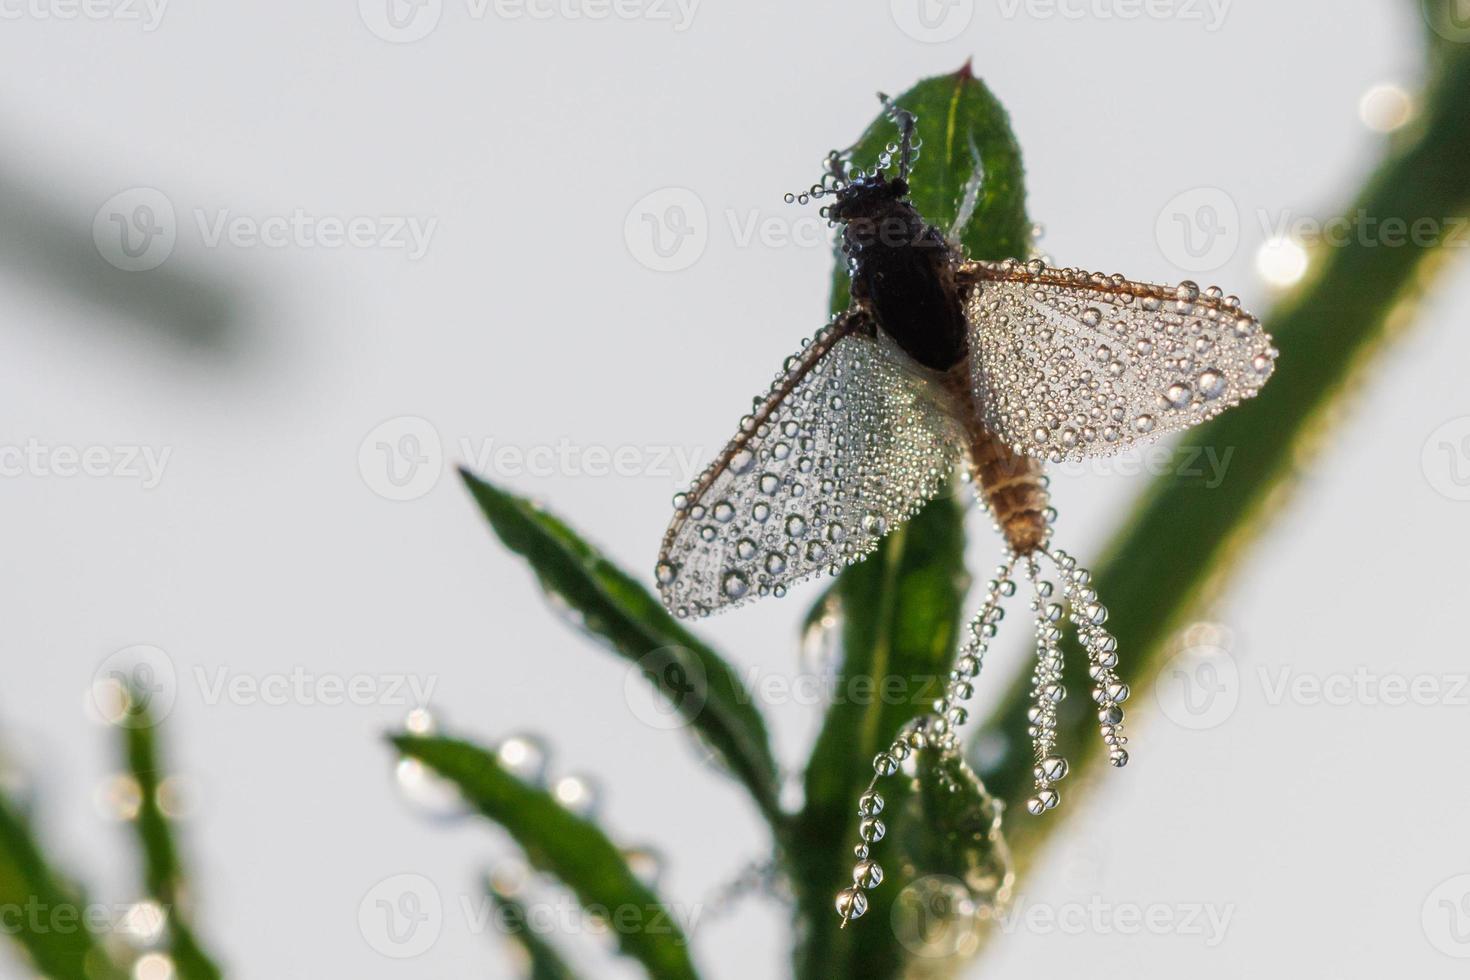 Imago von Ephemeroptera Eintagsfliege sitzt auf Gras mit Tautropfen auf Flügeln foto